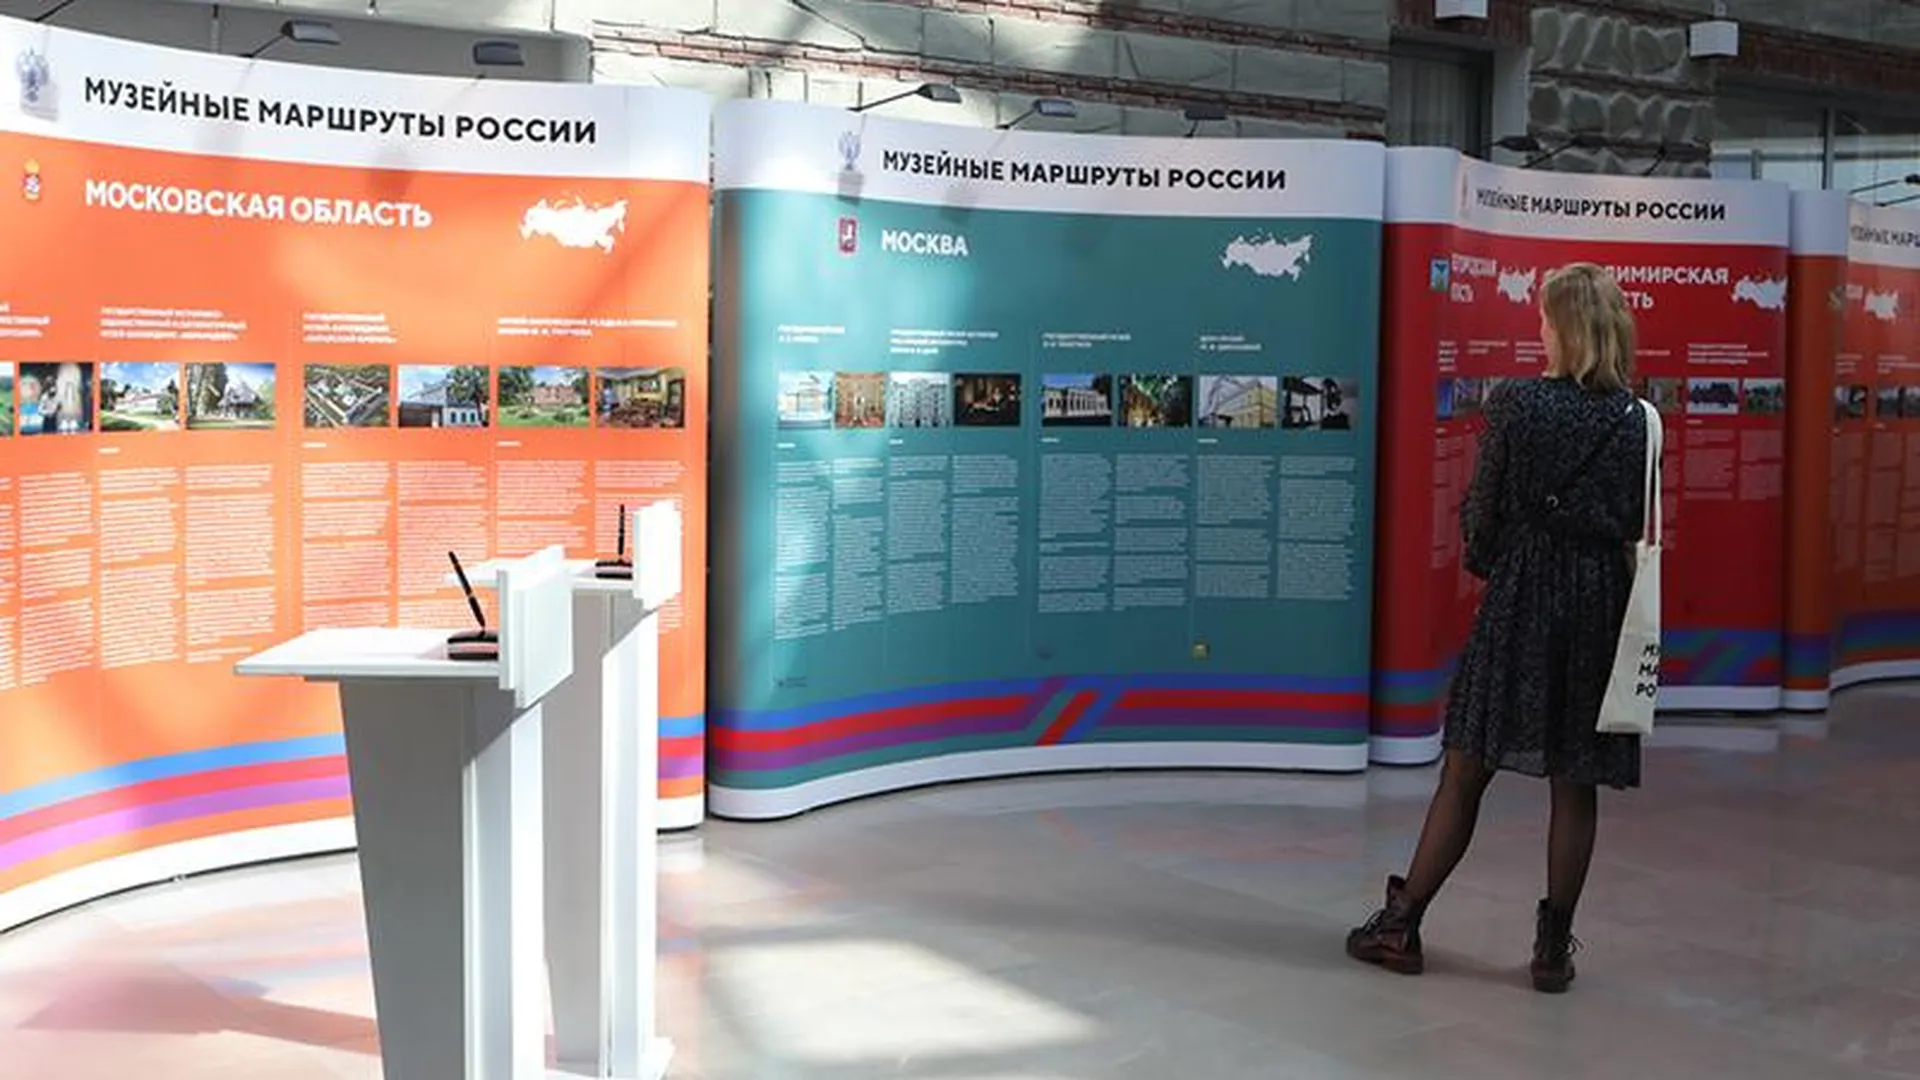 В Подмосковье стартовал проект «Музейные маршруты России» 